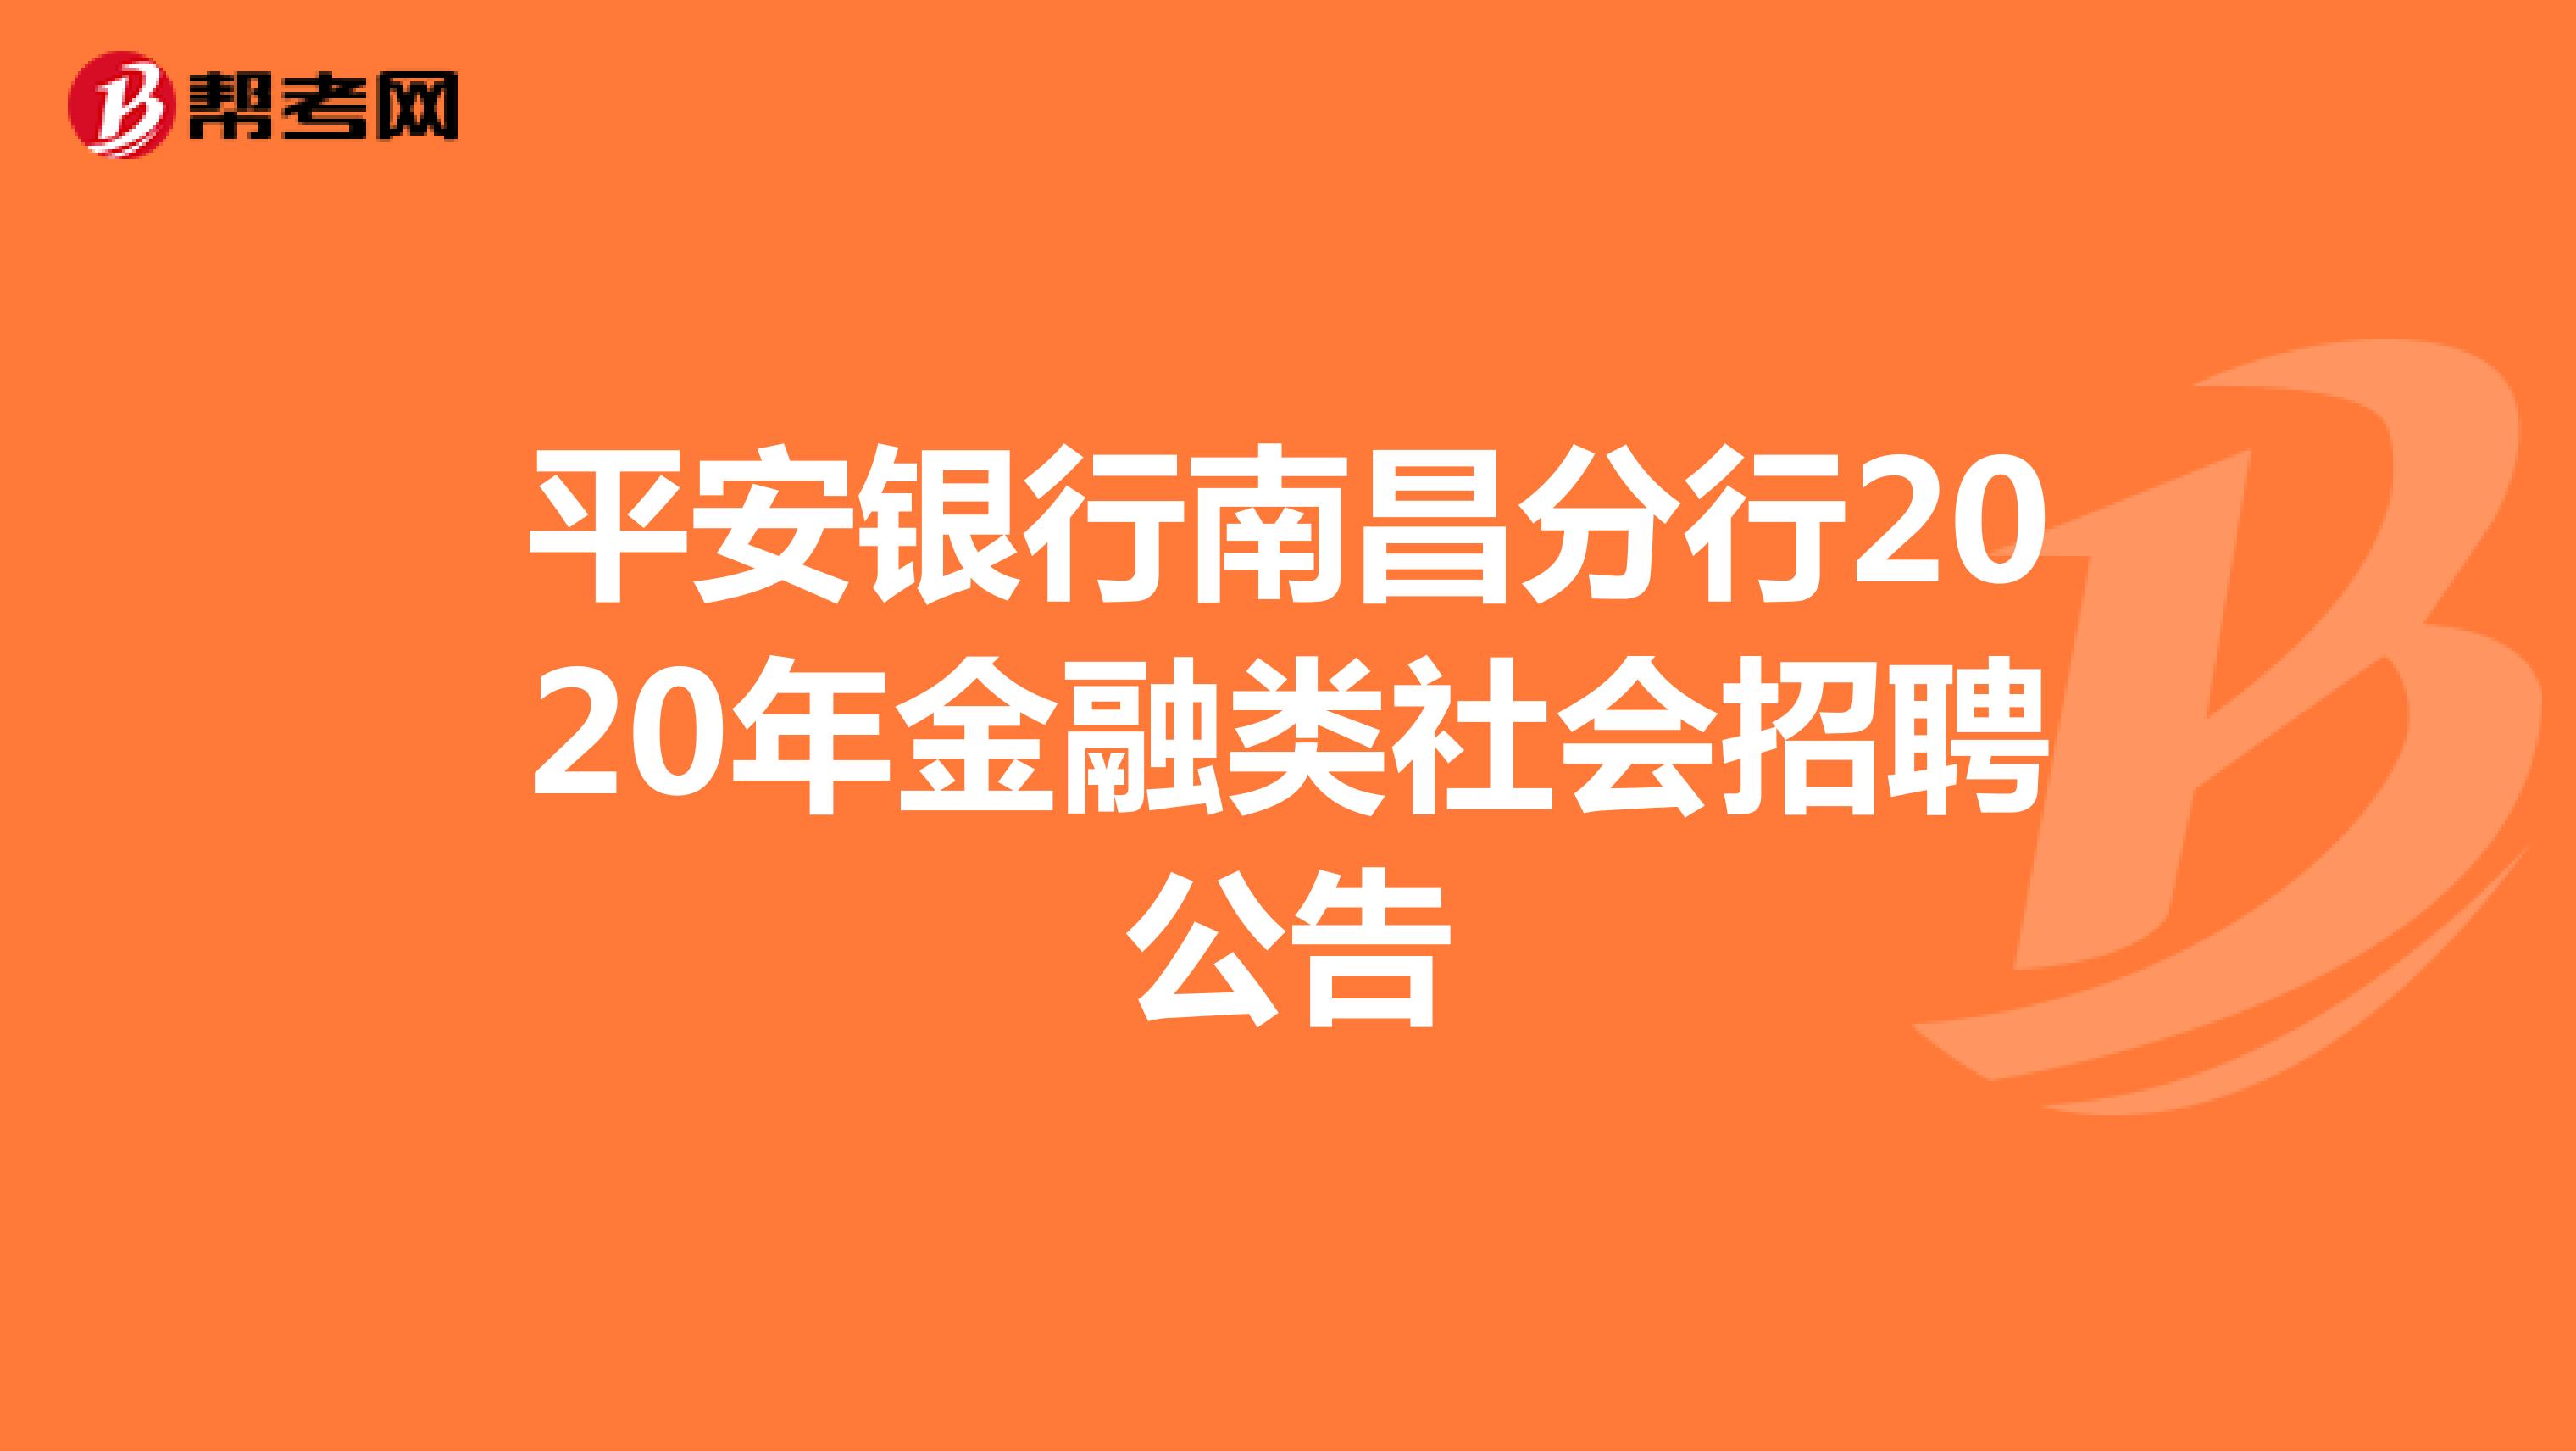 平安银行南昌分行2020年金融类社会招聘公告